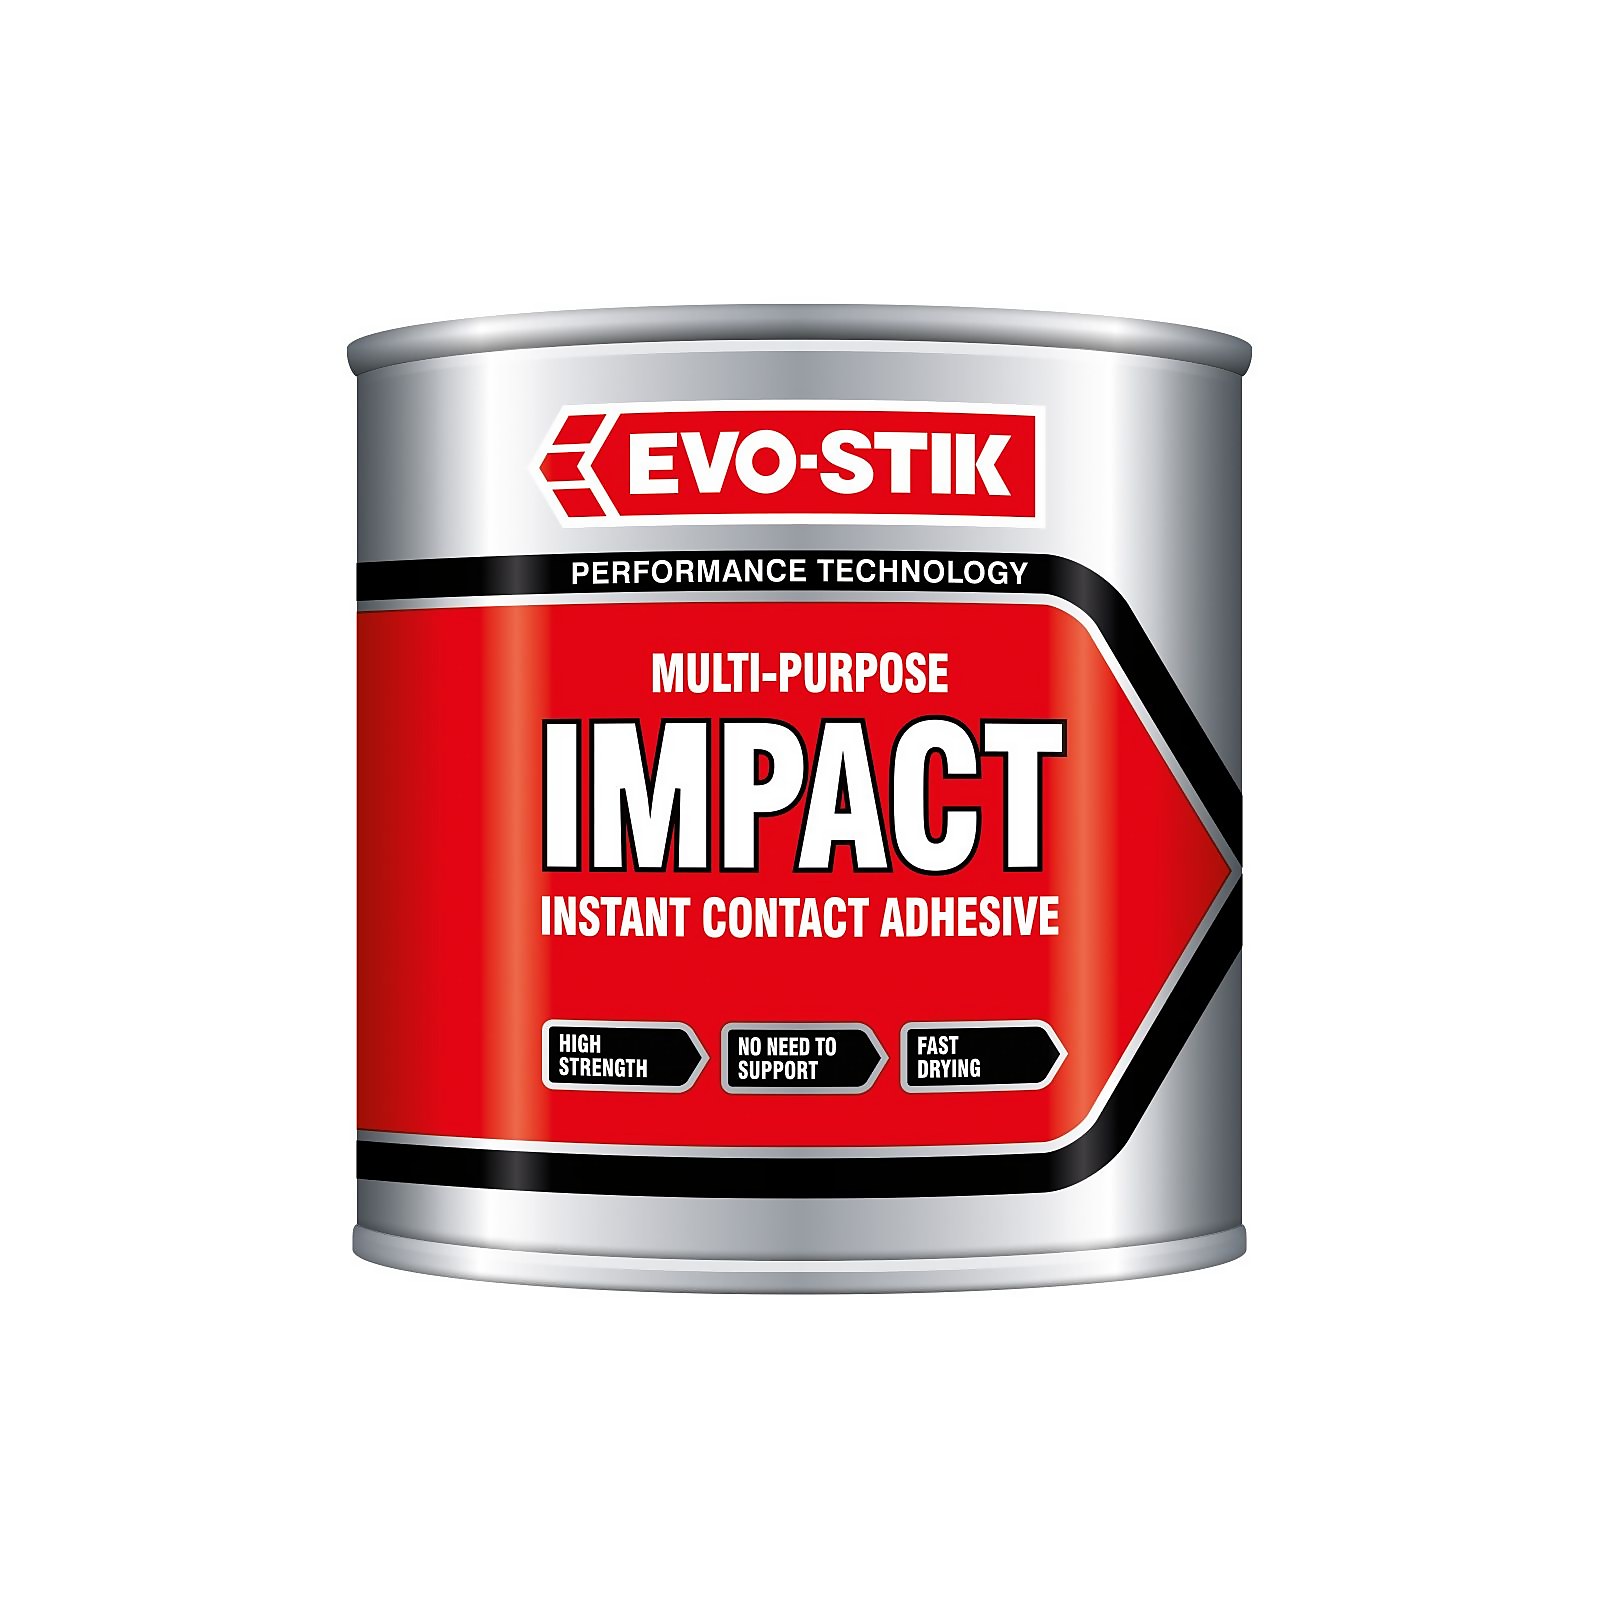 Photo of Evo-stik Impact Adhesive Tin - 250ml